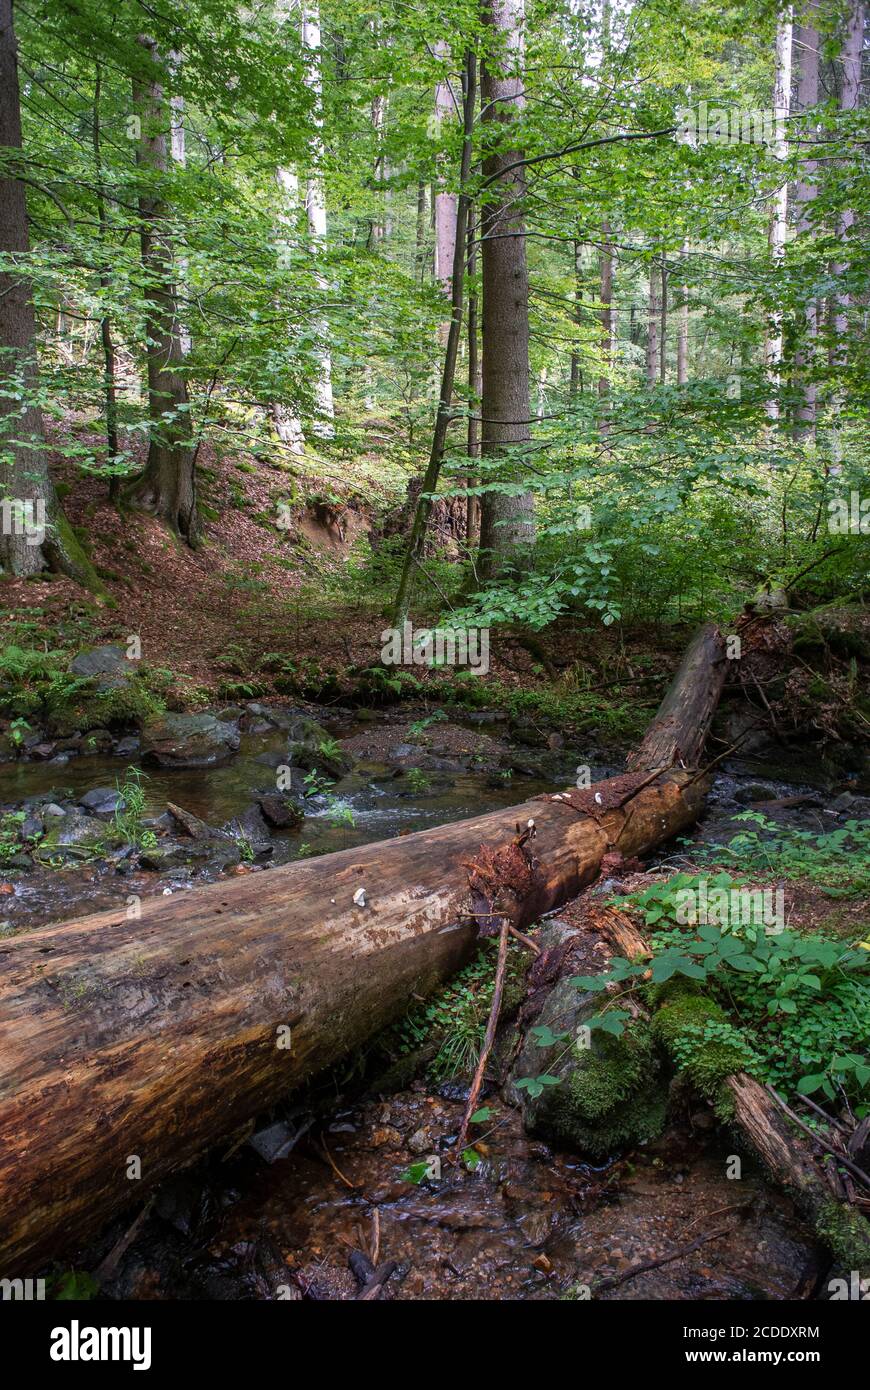 Le parc naturel de la Forêt thuringeoise a dans certains domaines une politique de non-perturbation. La forêt est intacte et décède naturellement. Banque D'Images